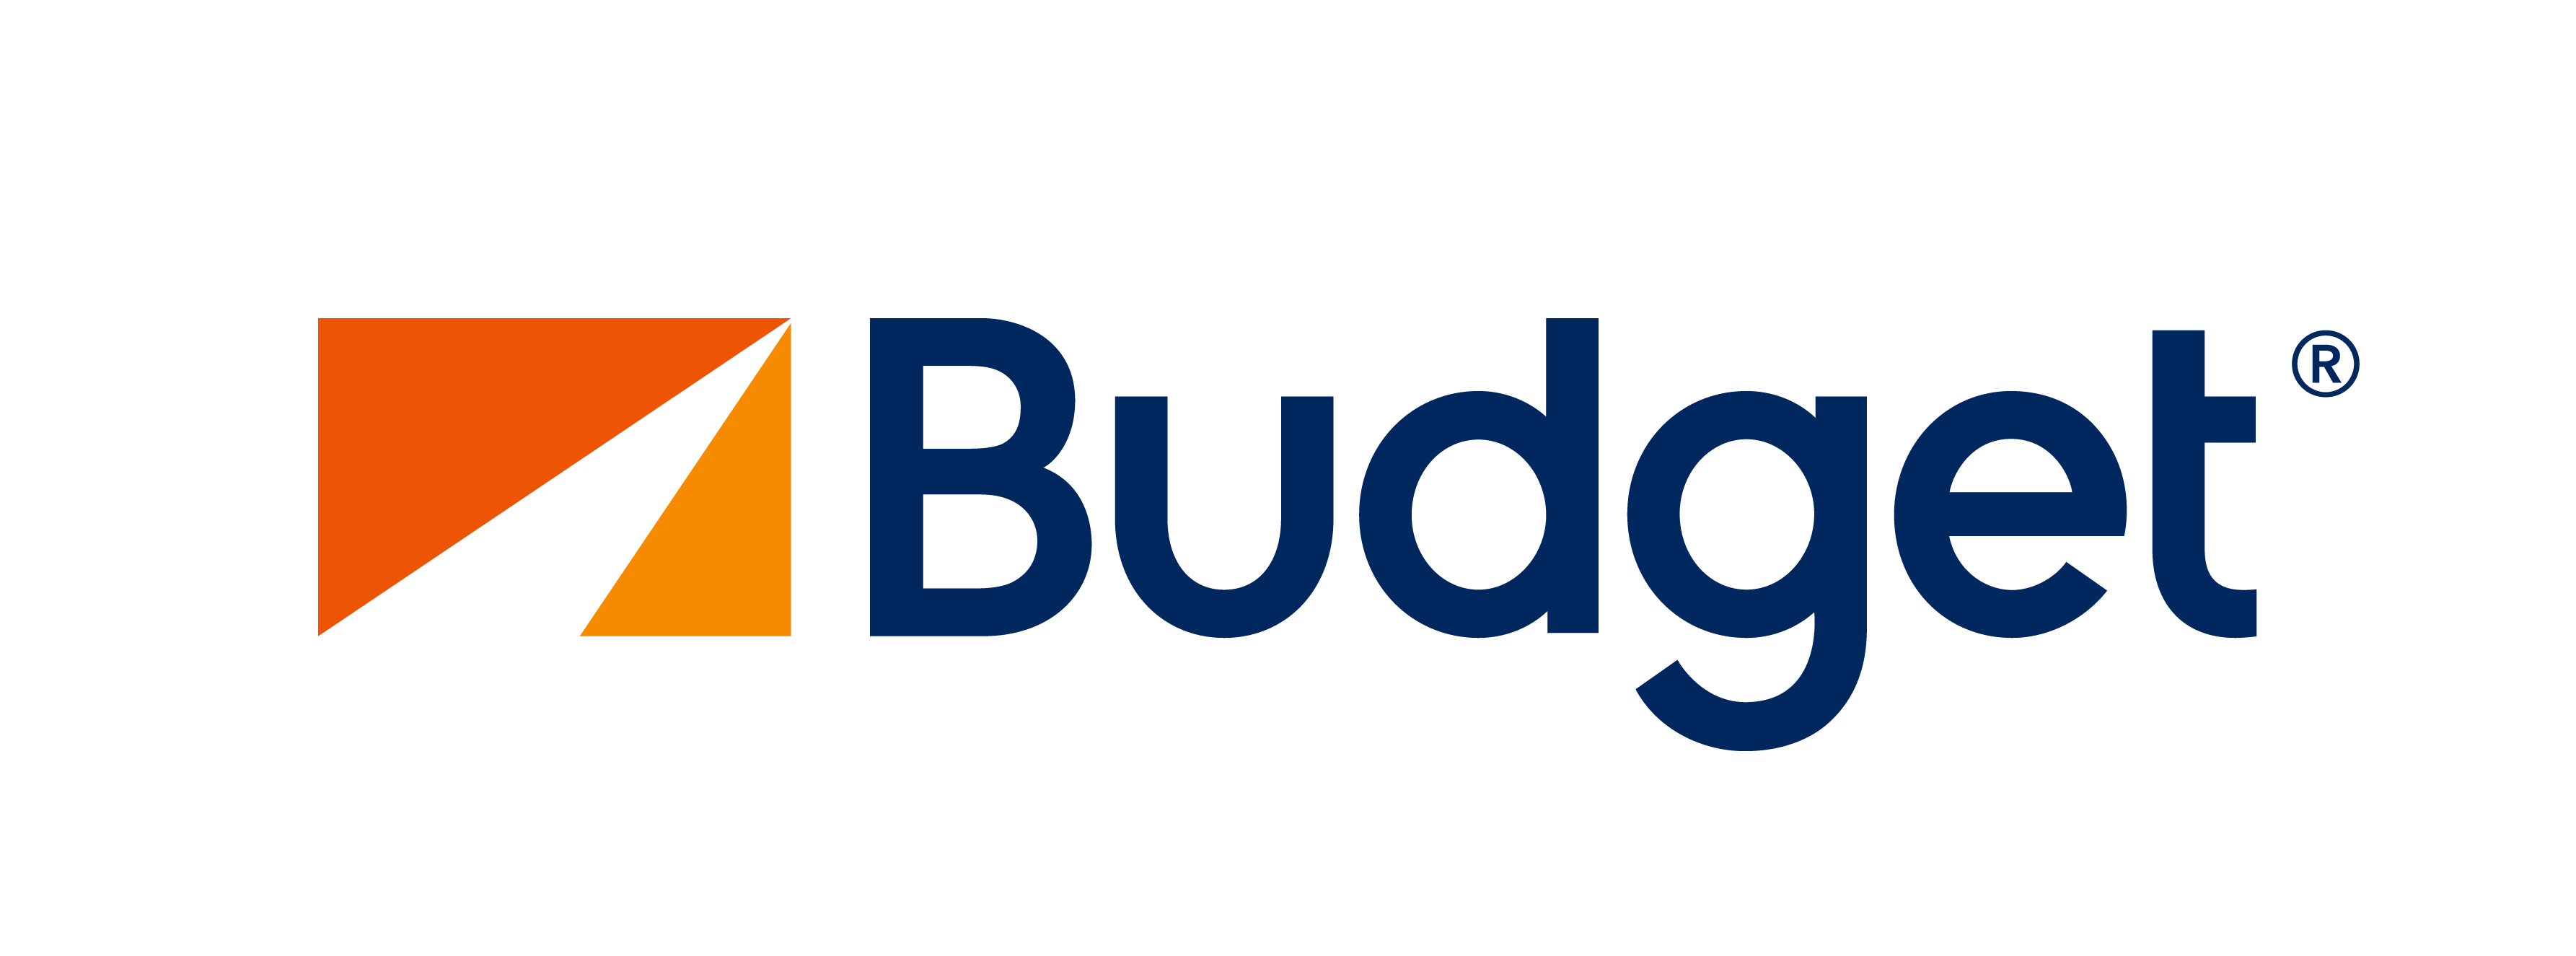 Бюджетный логотип PNG изображения фон